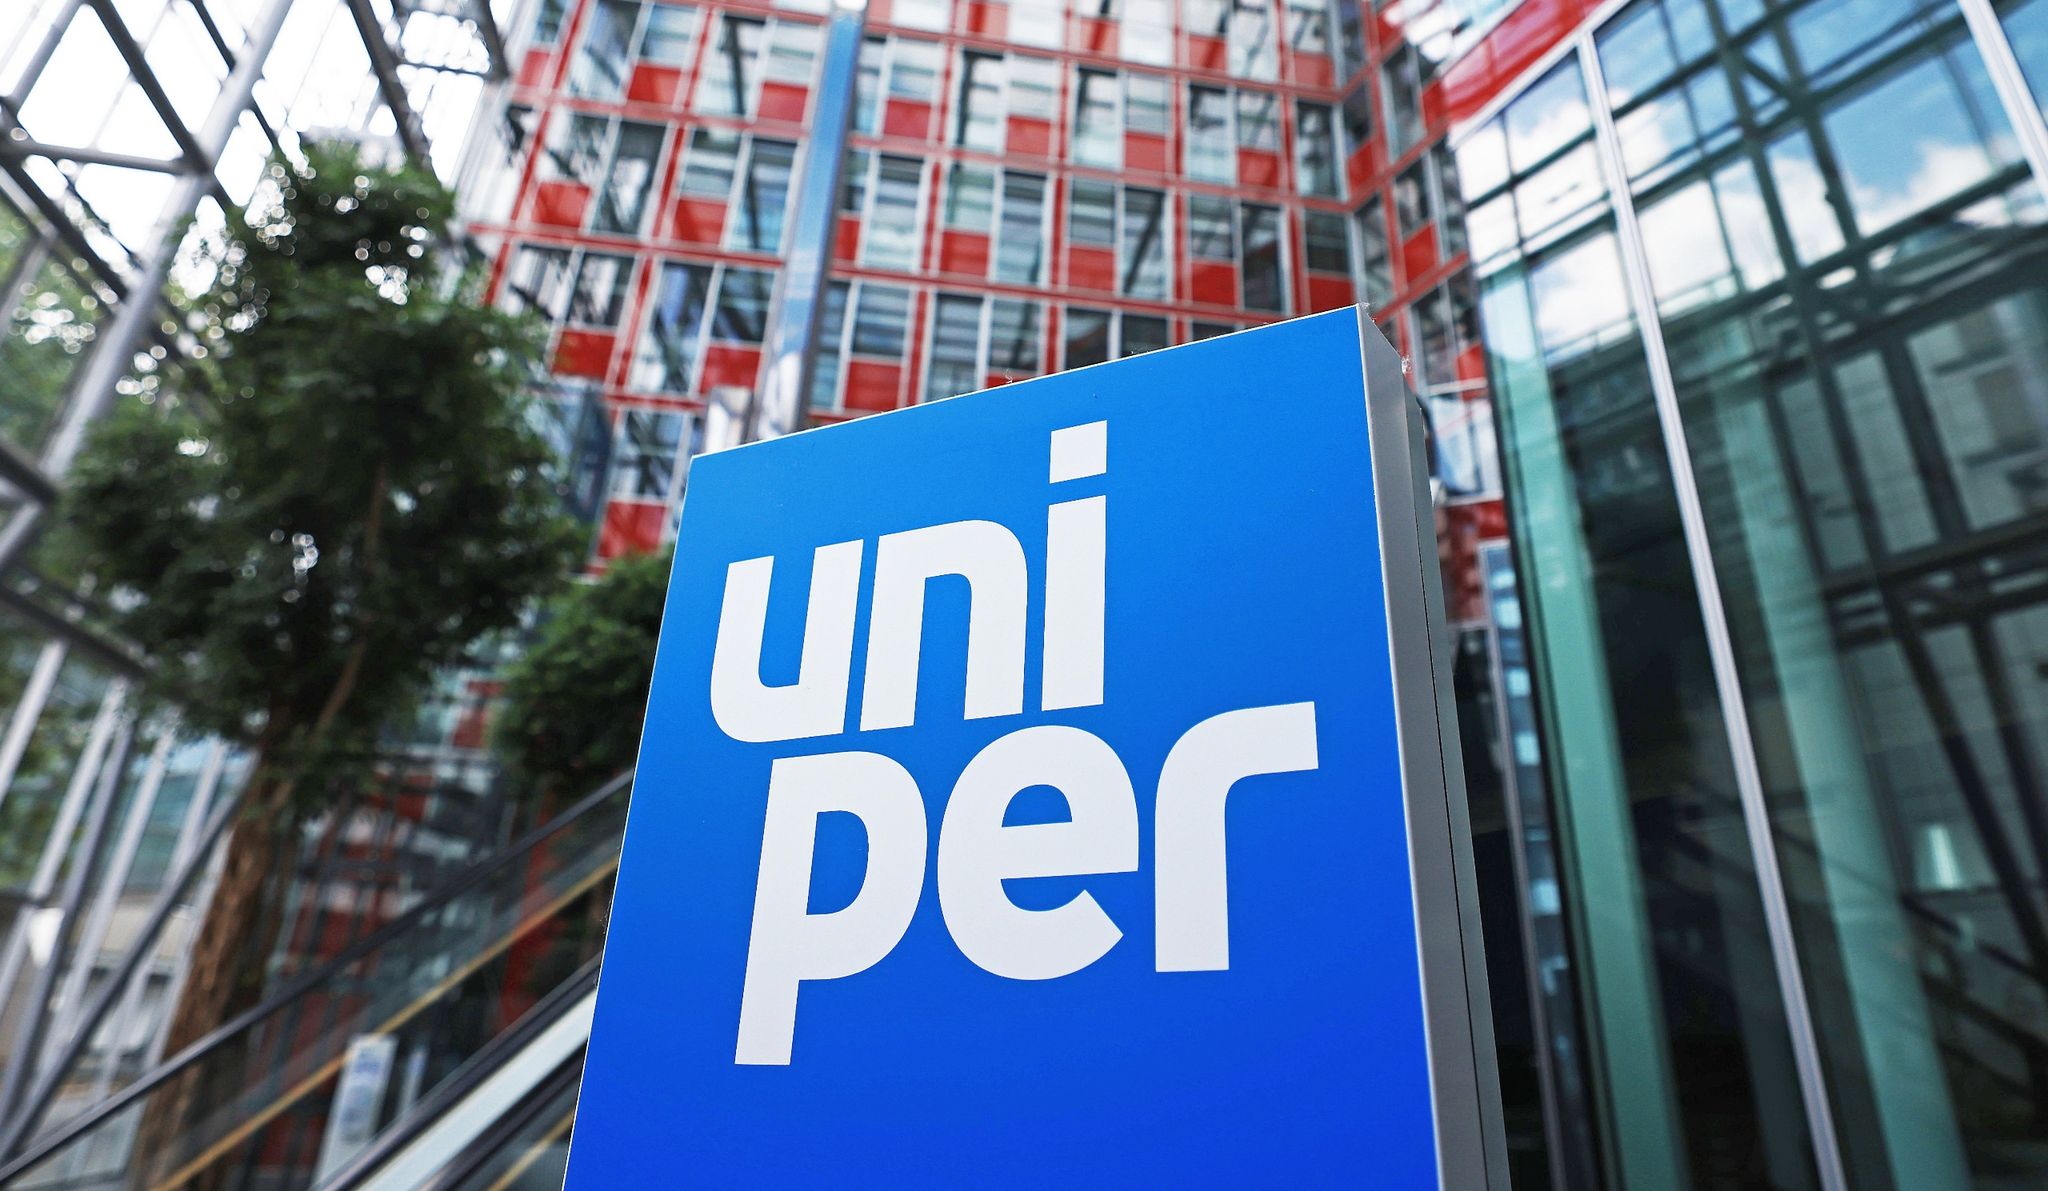 Eine Stele mit dem Uniper-Firmen-Logo.